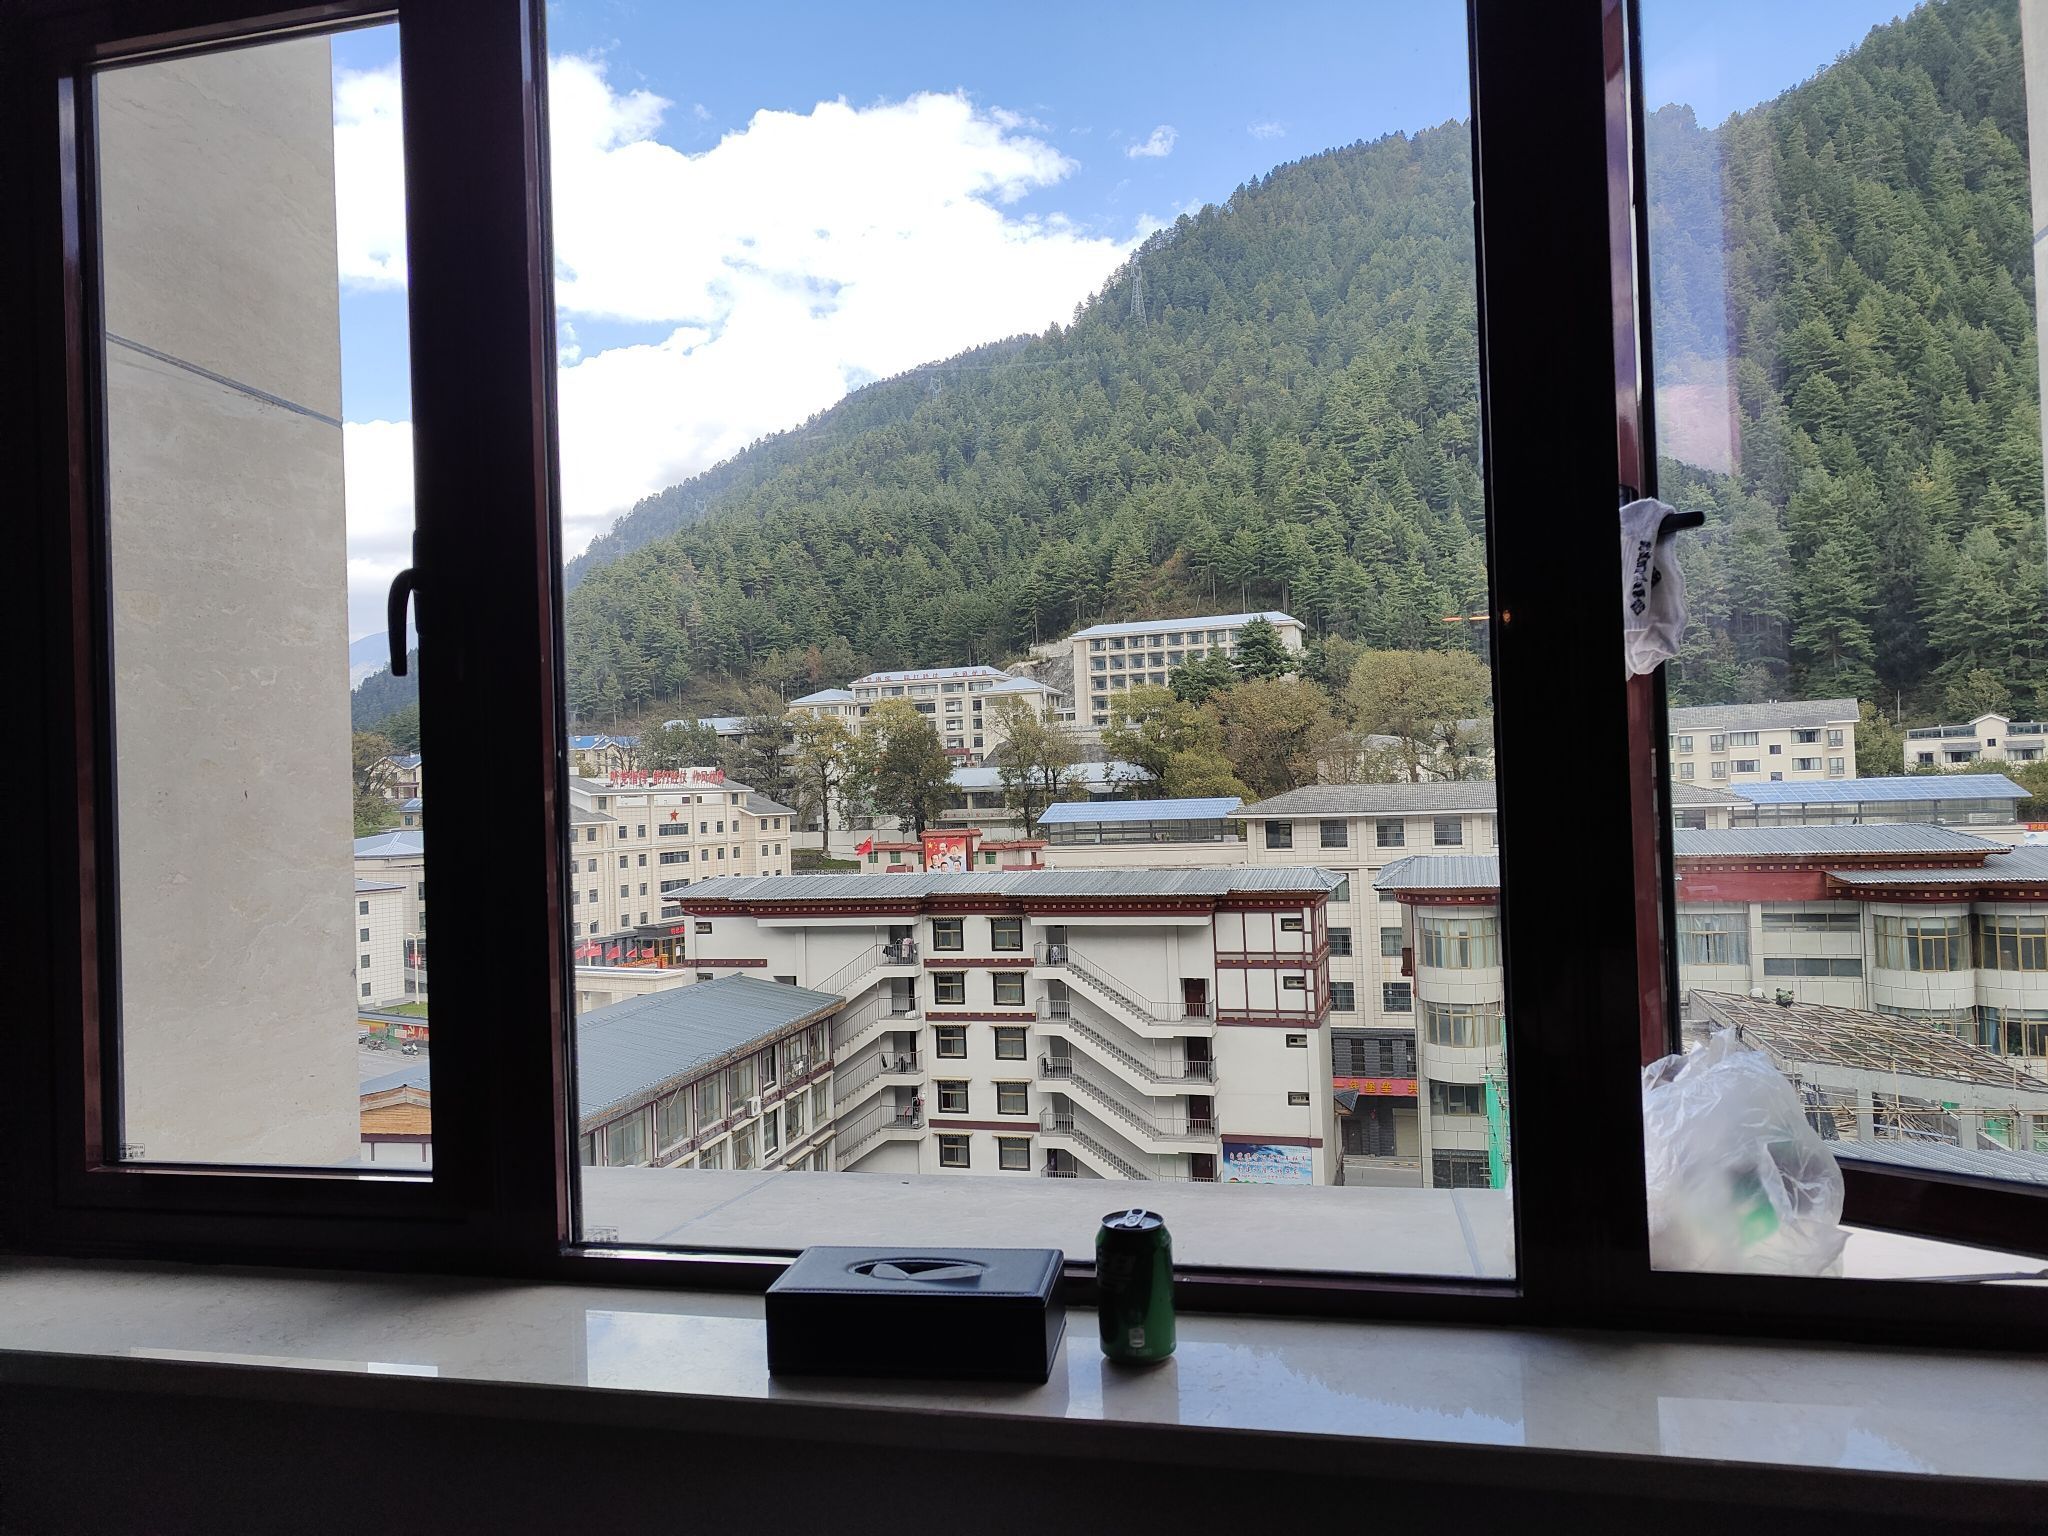 平措康桑酒店是西藏的一家连锁酒店，每一家酒店的服务都是可以说是数一数二的，但是来亚东店并没有觉得会有